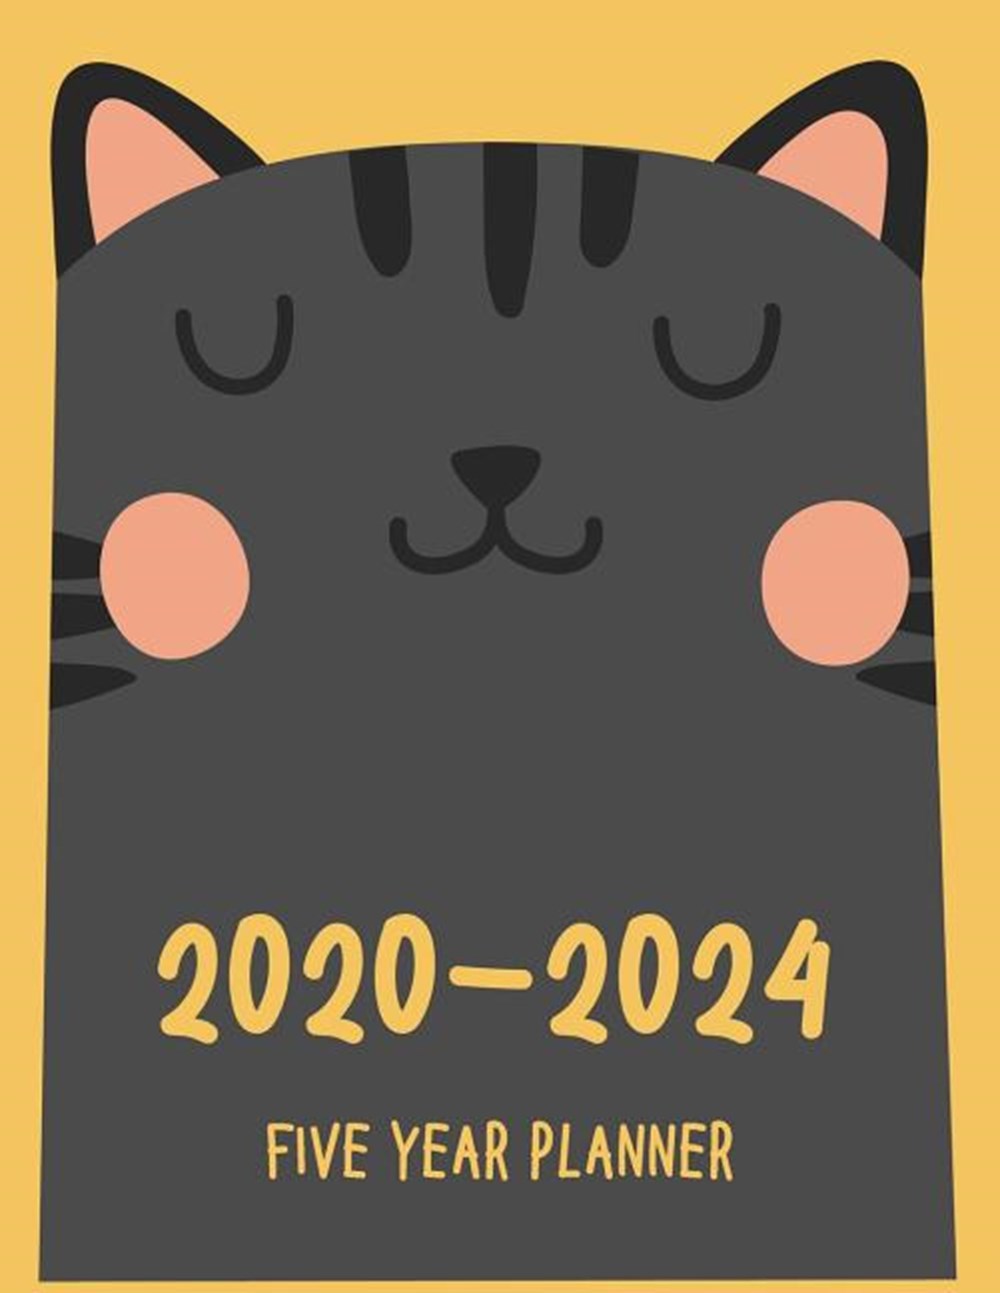 2020-2024 Five Year Planner 2020-2024 planner. Monthly Schedule Organizer -Agenda Planner For The Ne